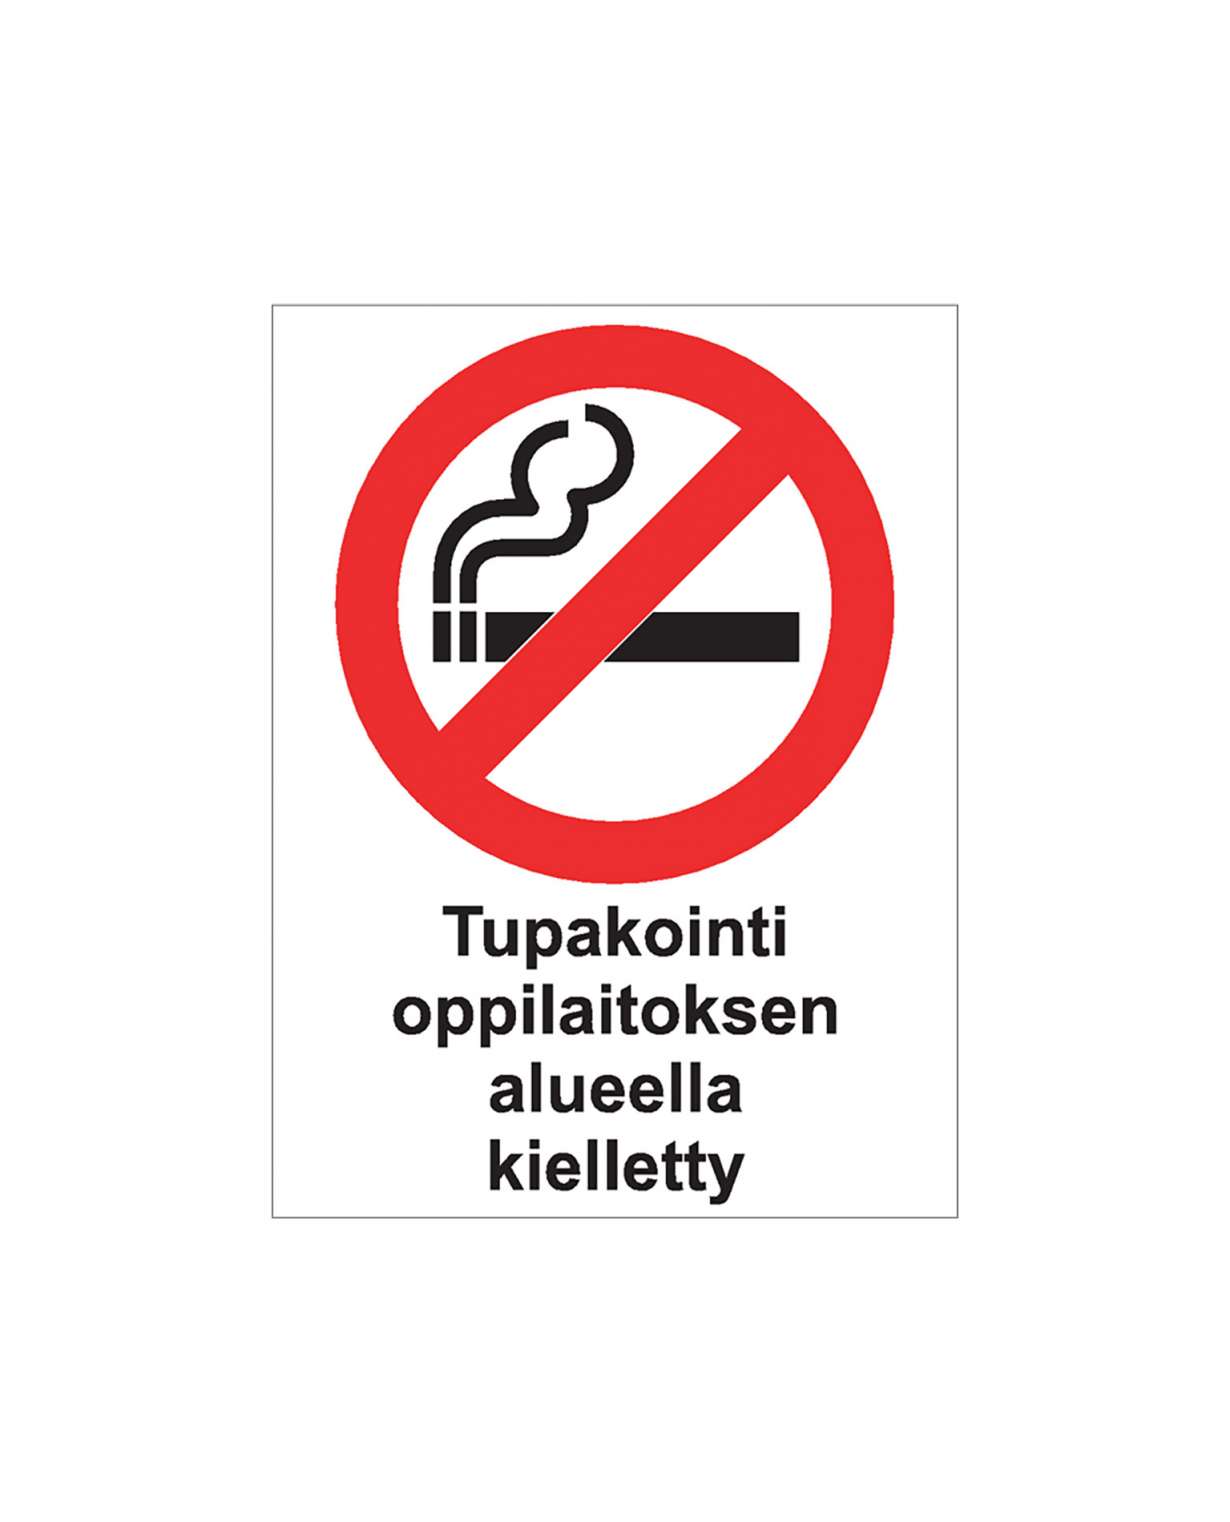 Tupakointi oppilaitoksen alueella kielletty, Ibond alumiini, 300x400 mm